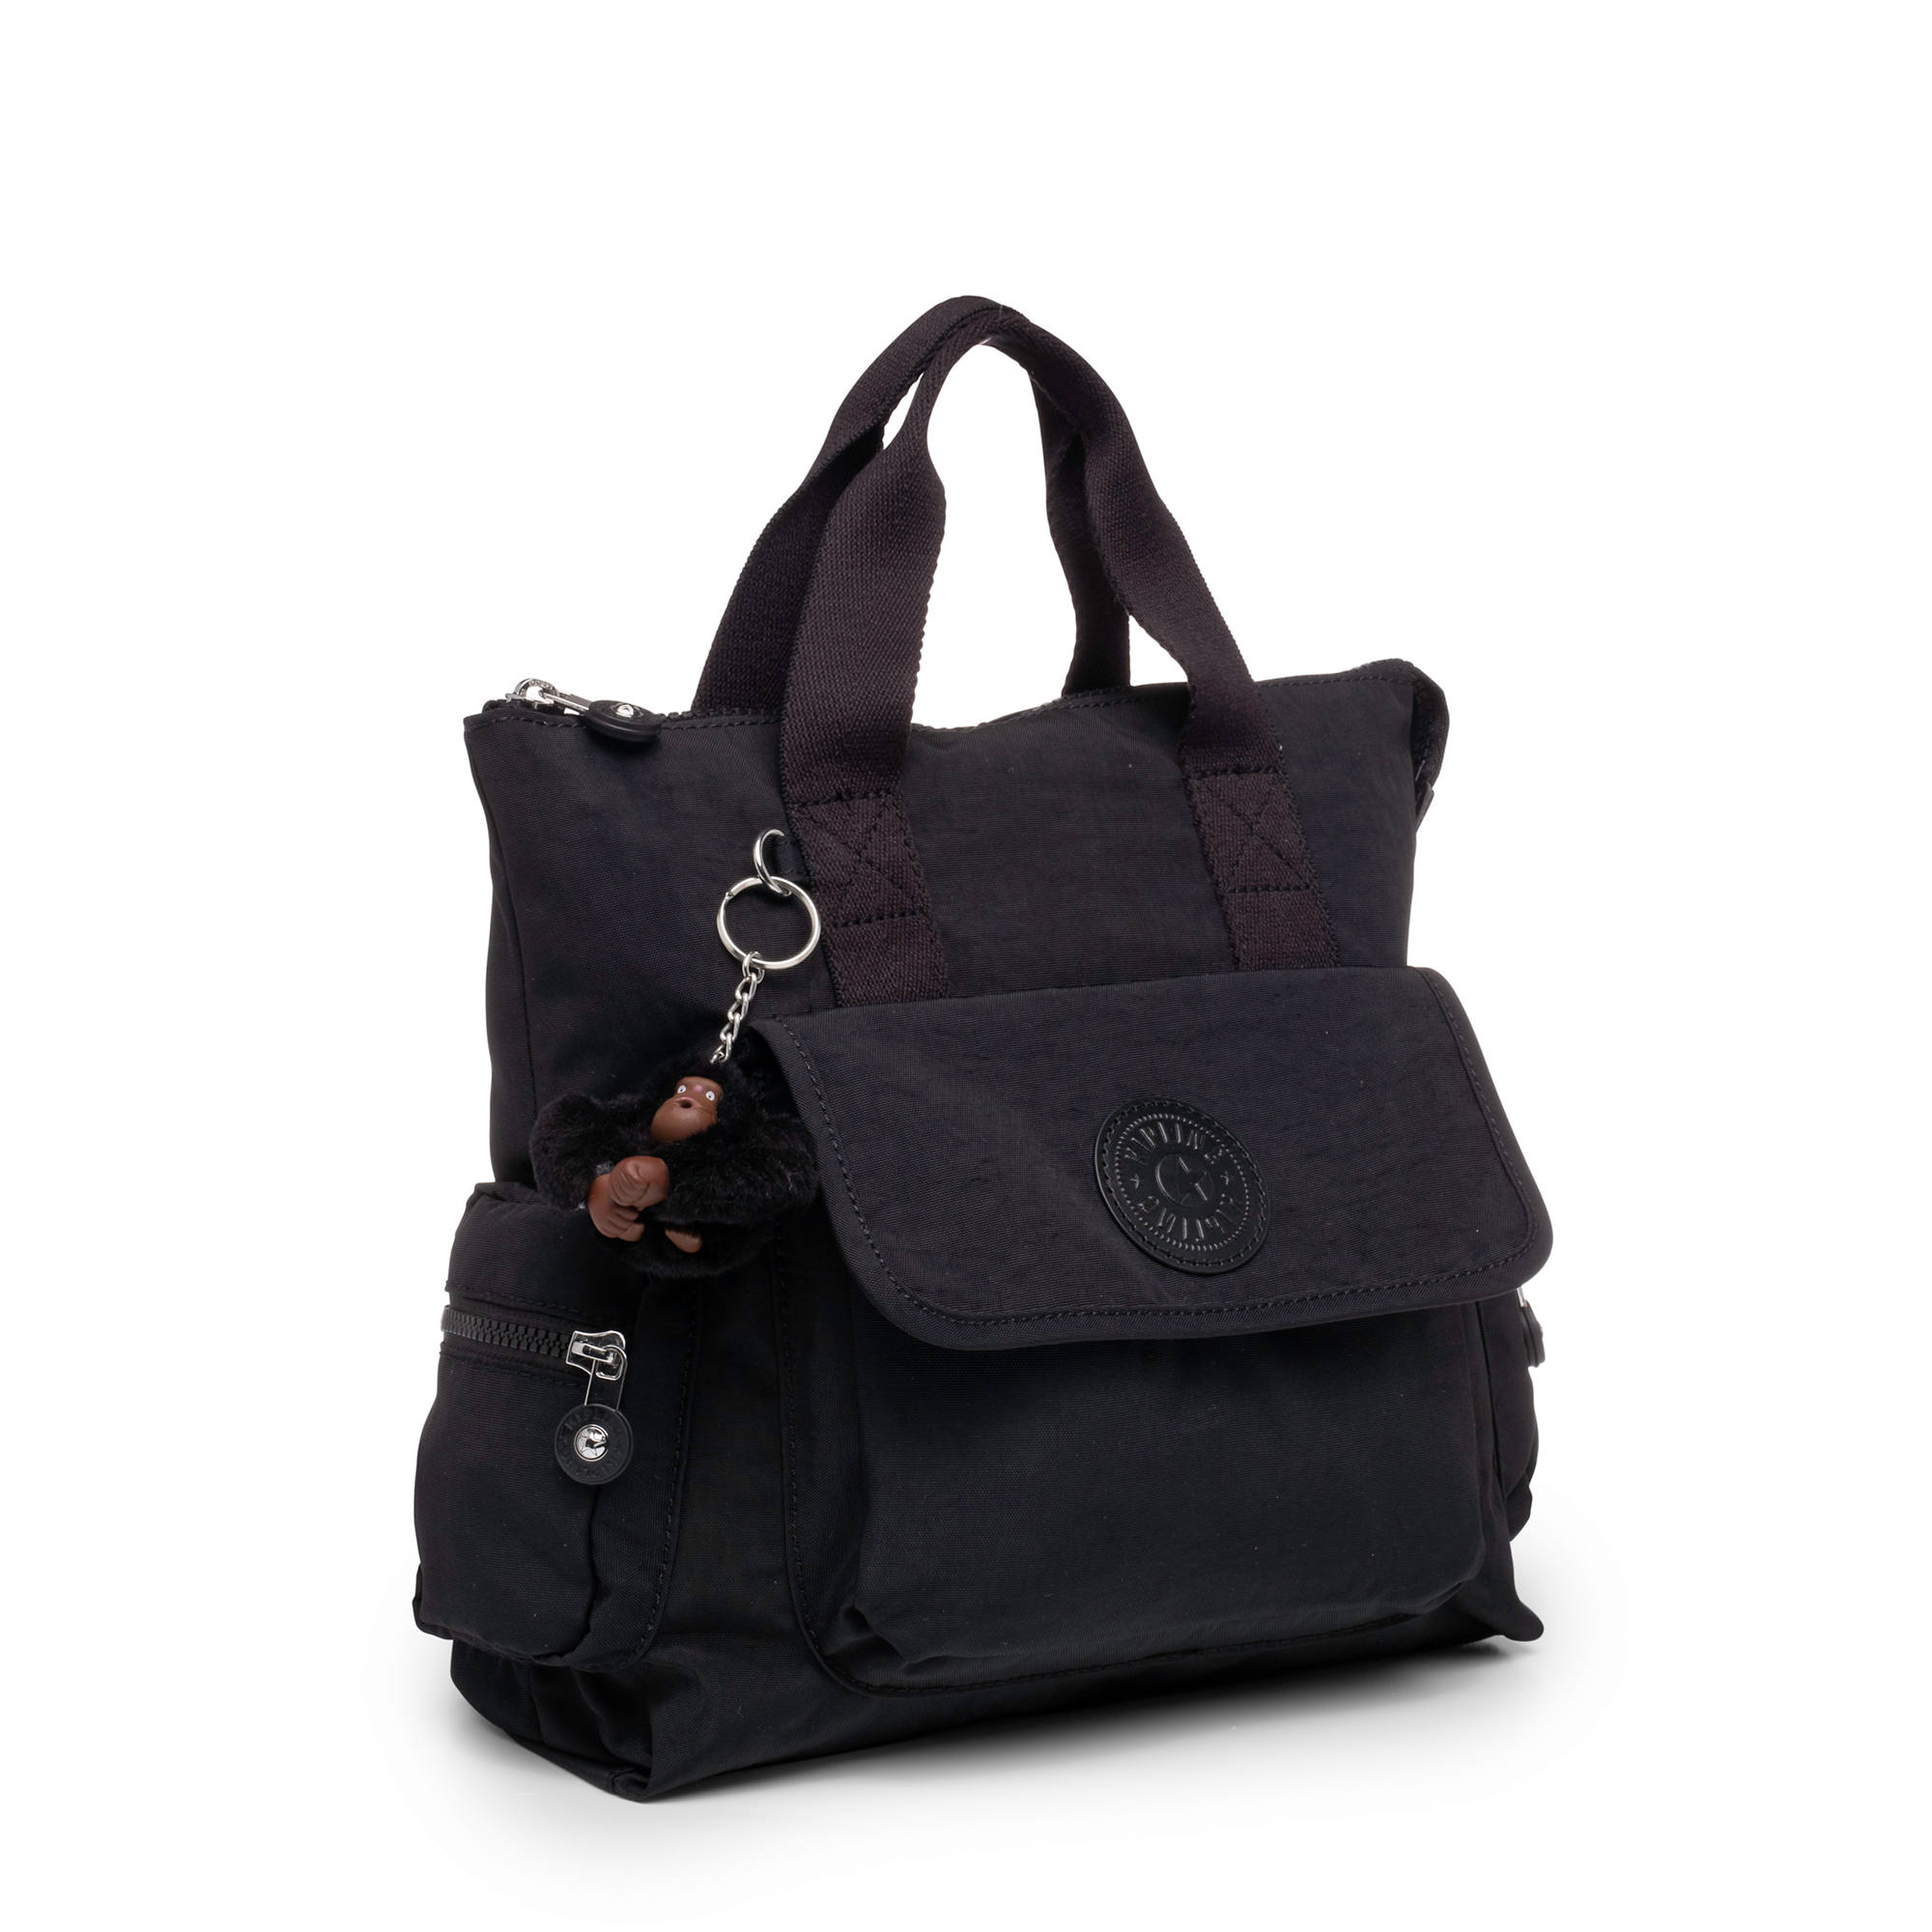 Kipling Revel Convertible Backpack | eBay